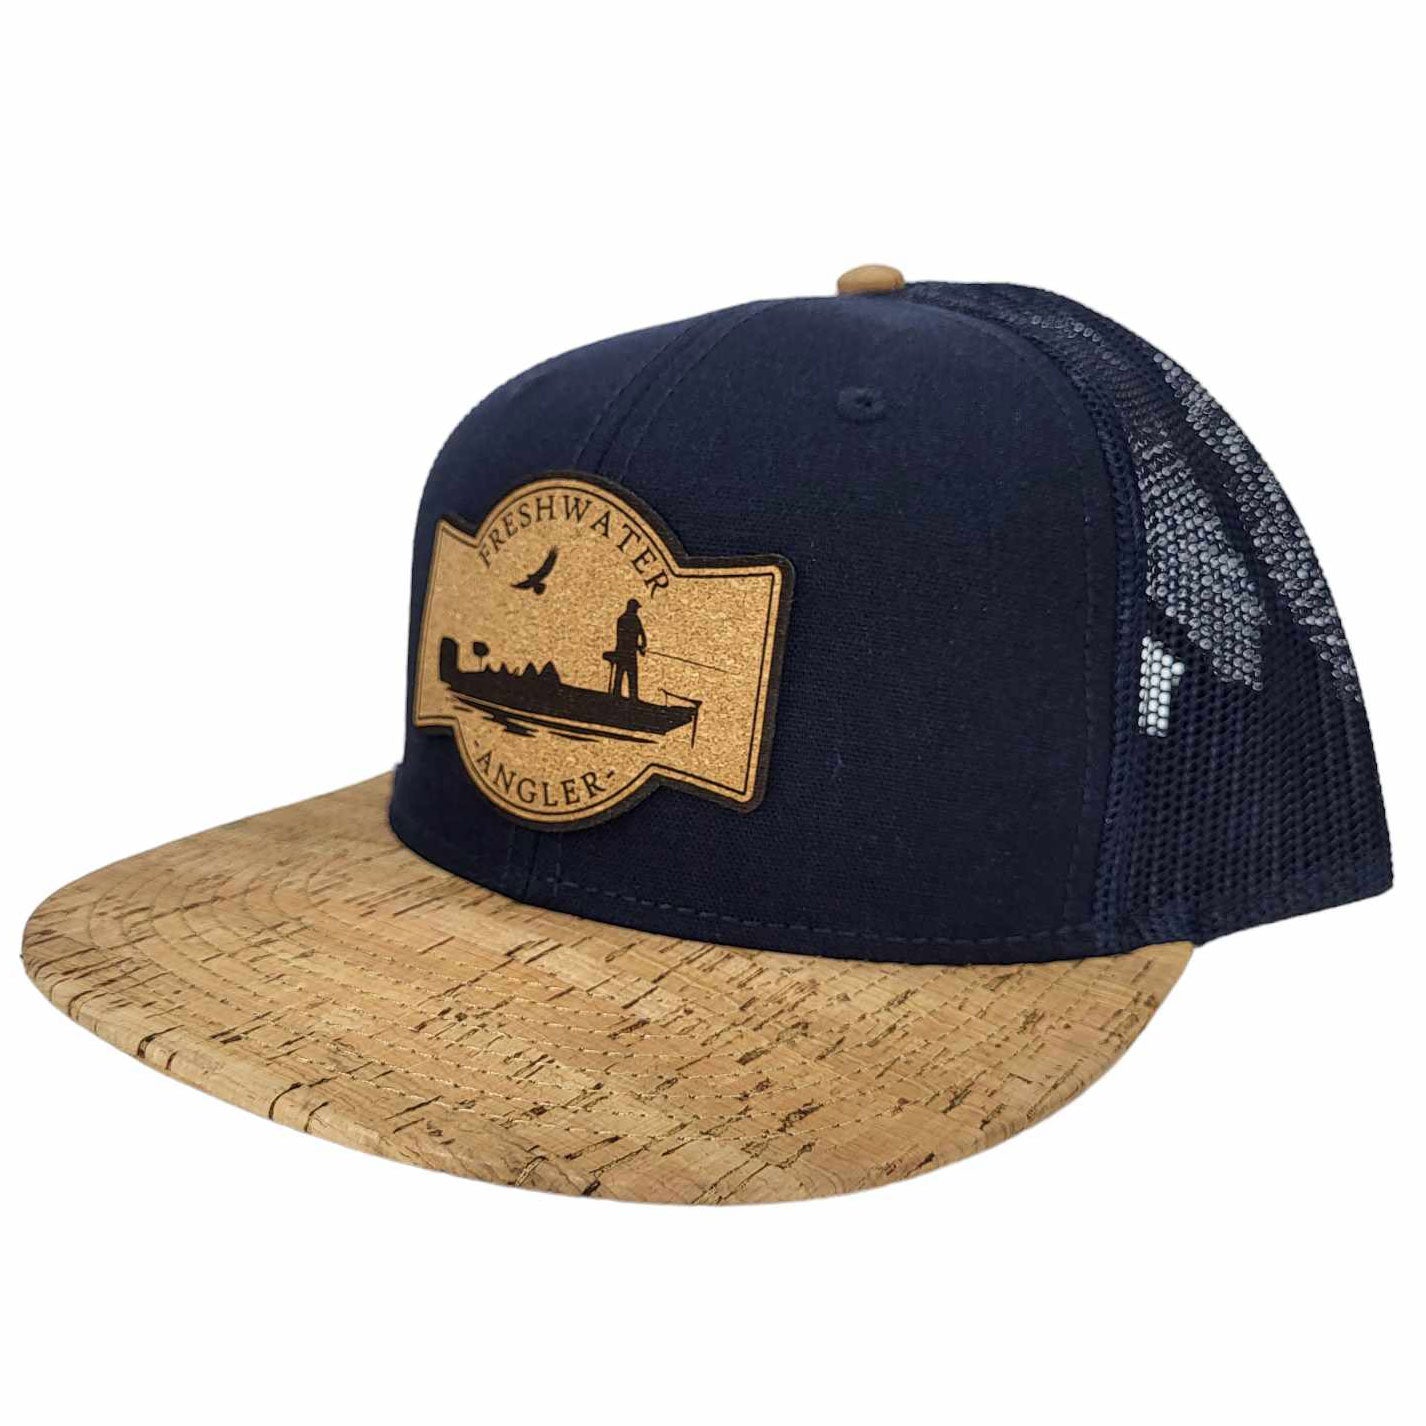 Freshwater Angler Cork Hat